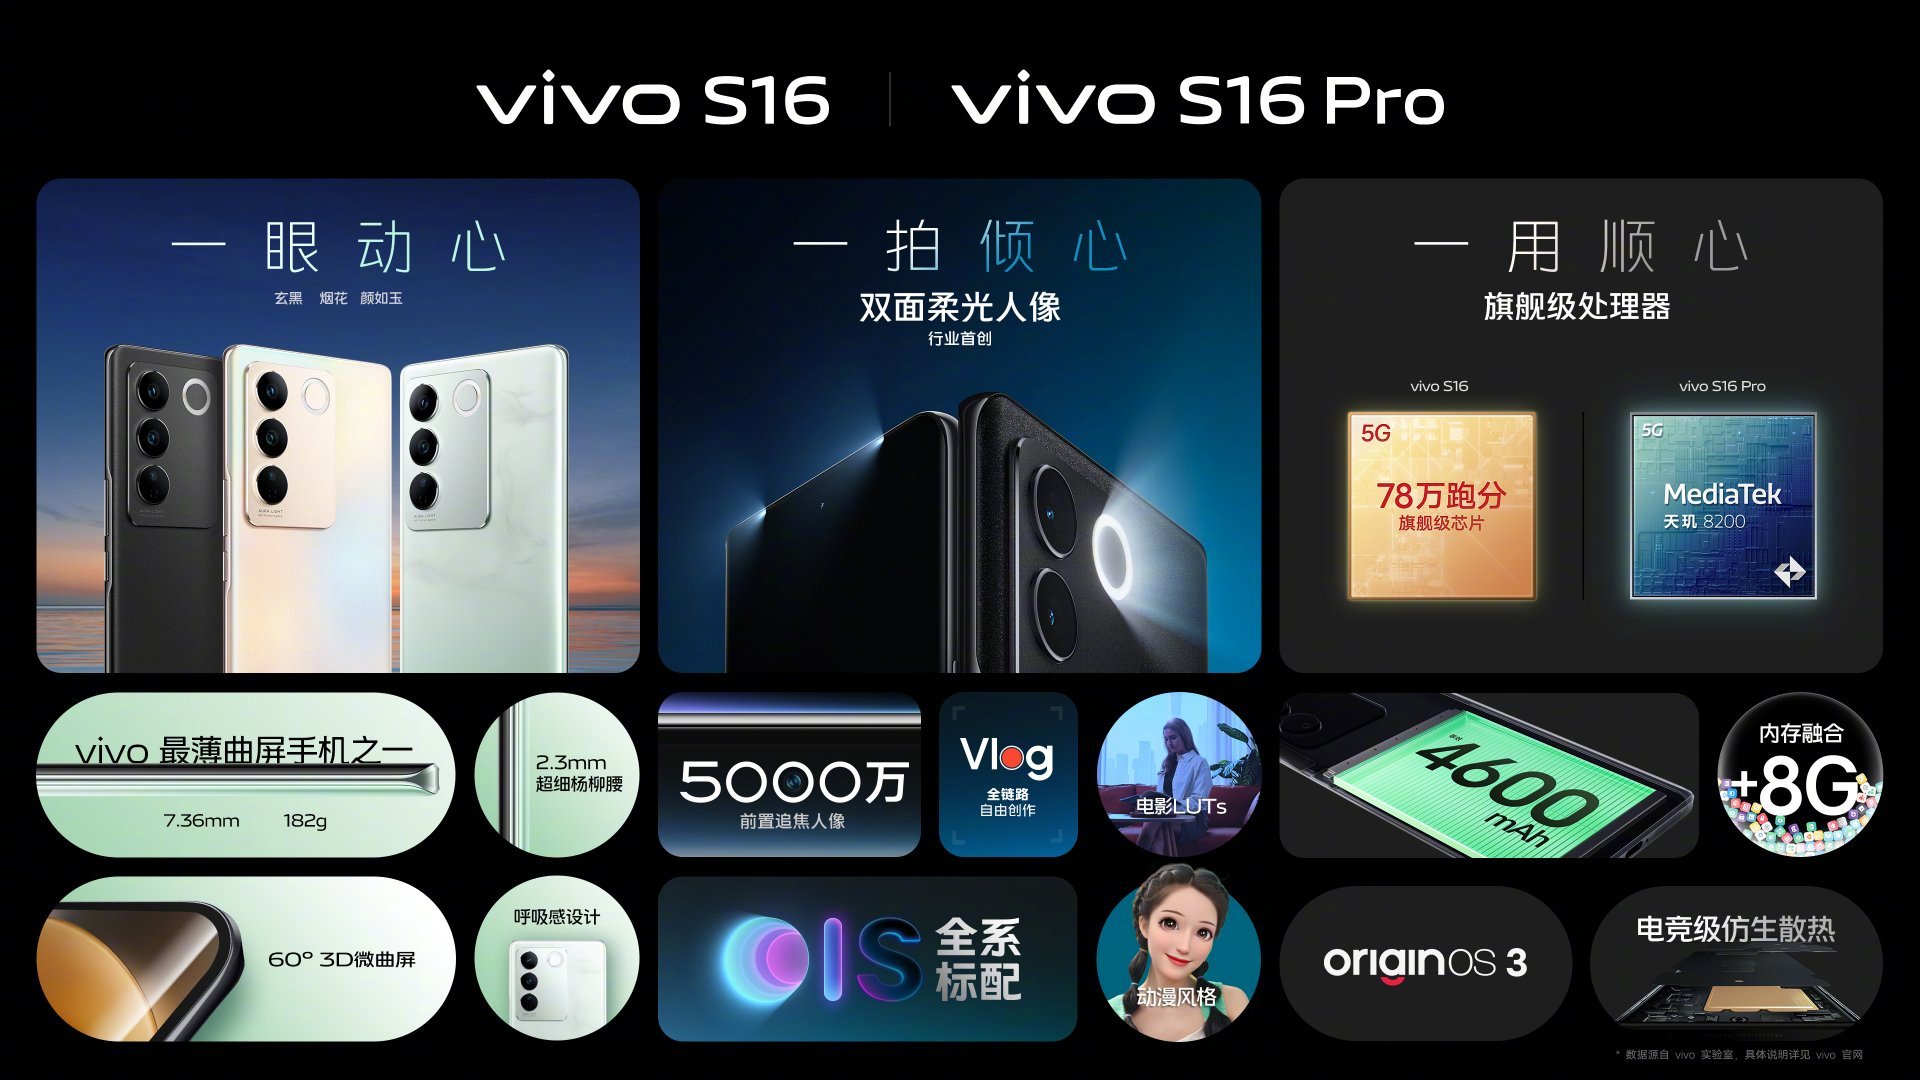 Vivo S16 özellikleri ve fiyatı